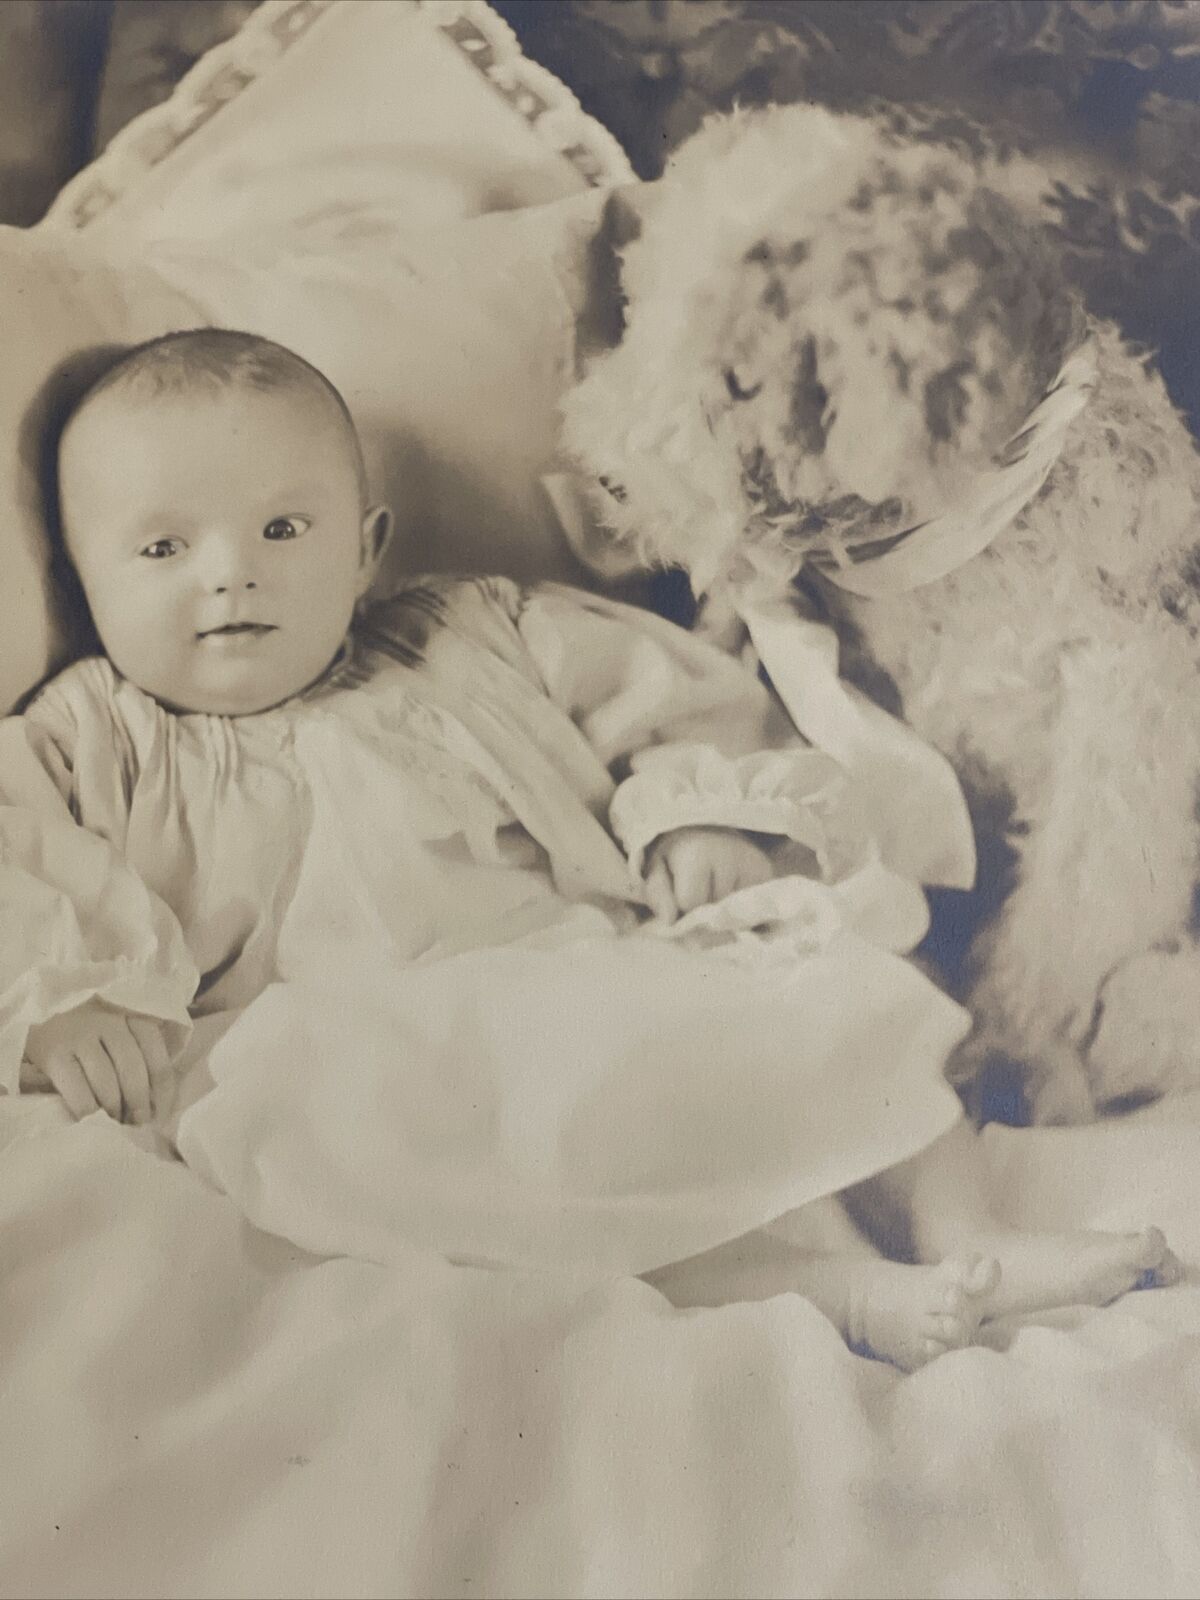 1929 Large Antique Studio Photo Baby Posed with Stuffed Animal Plush Dog Toy